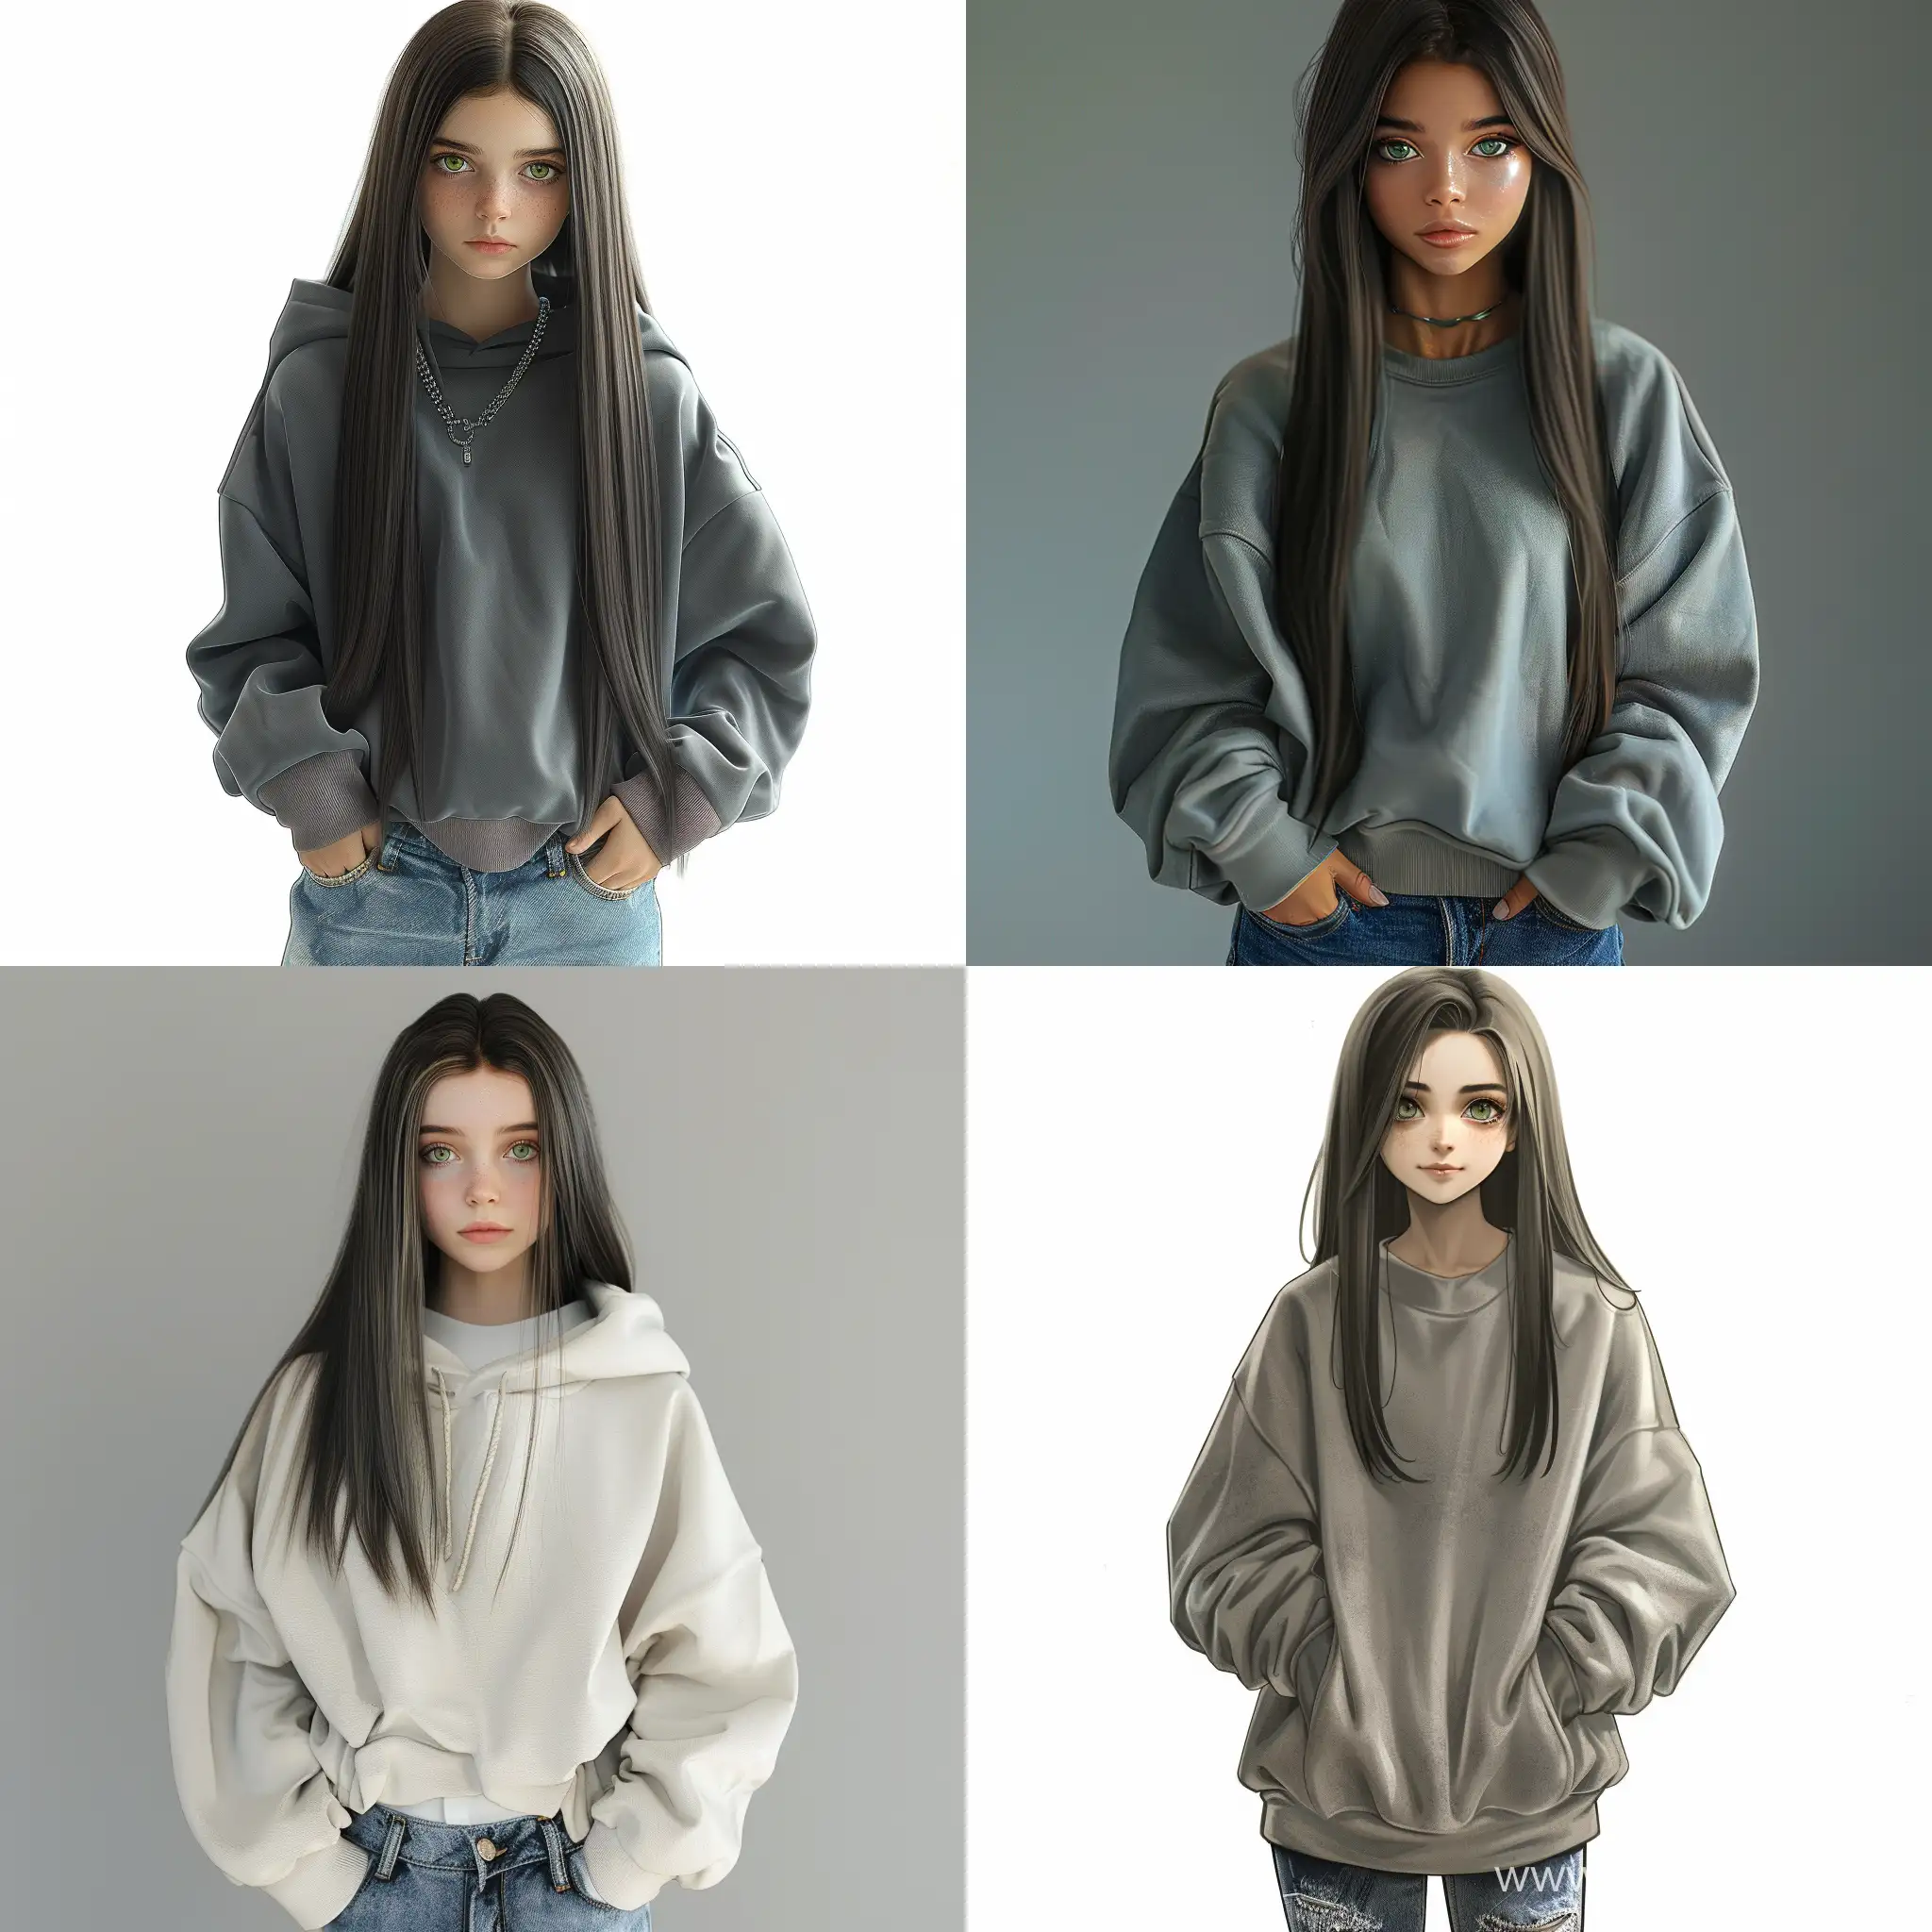 Stylish-Teenage-Girl-in-Oversized-Sweatshirt-and-Jeans